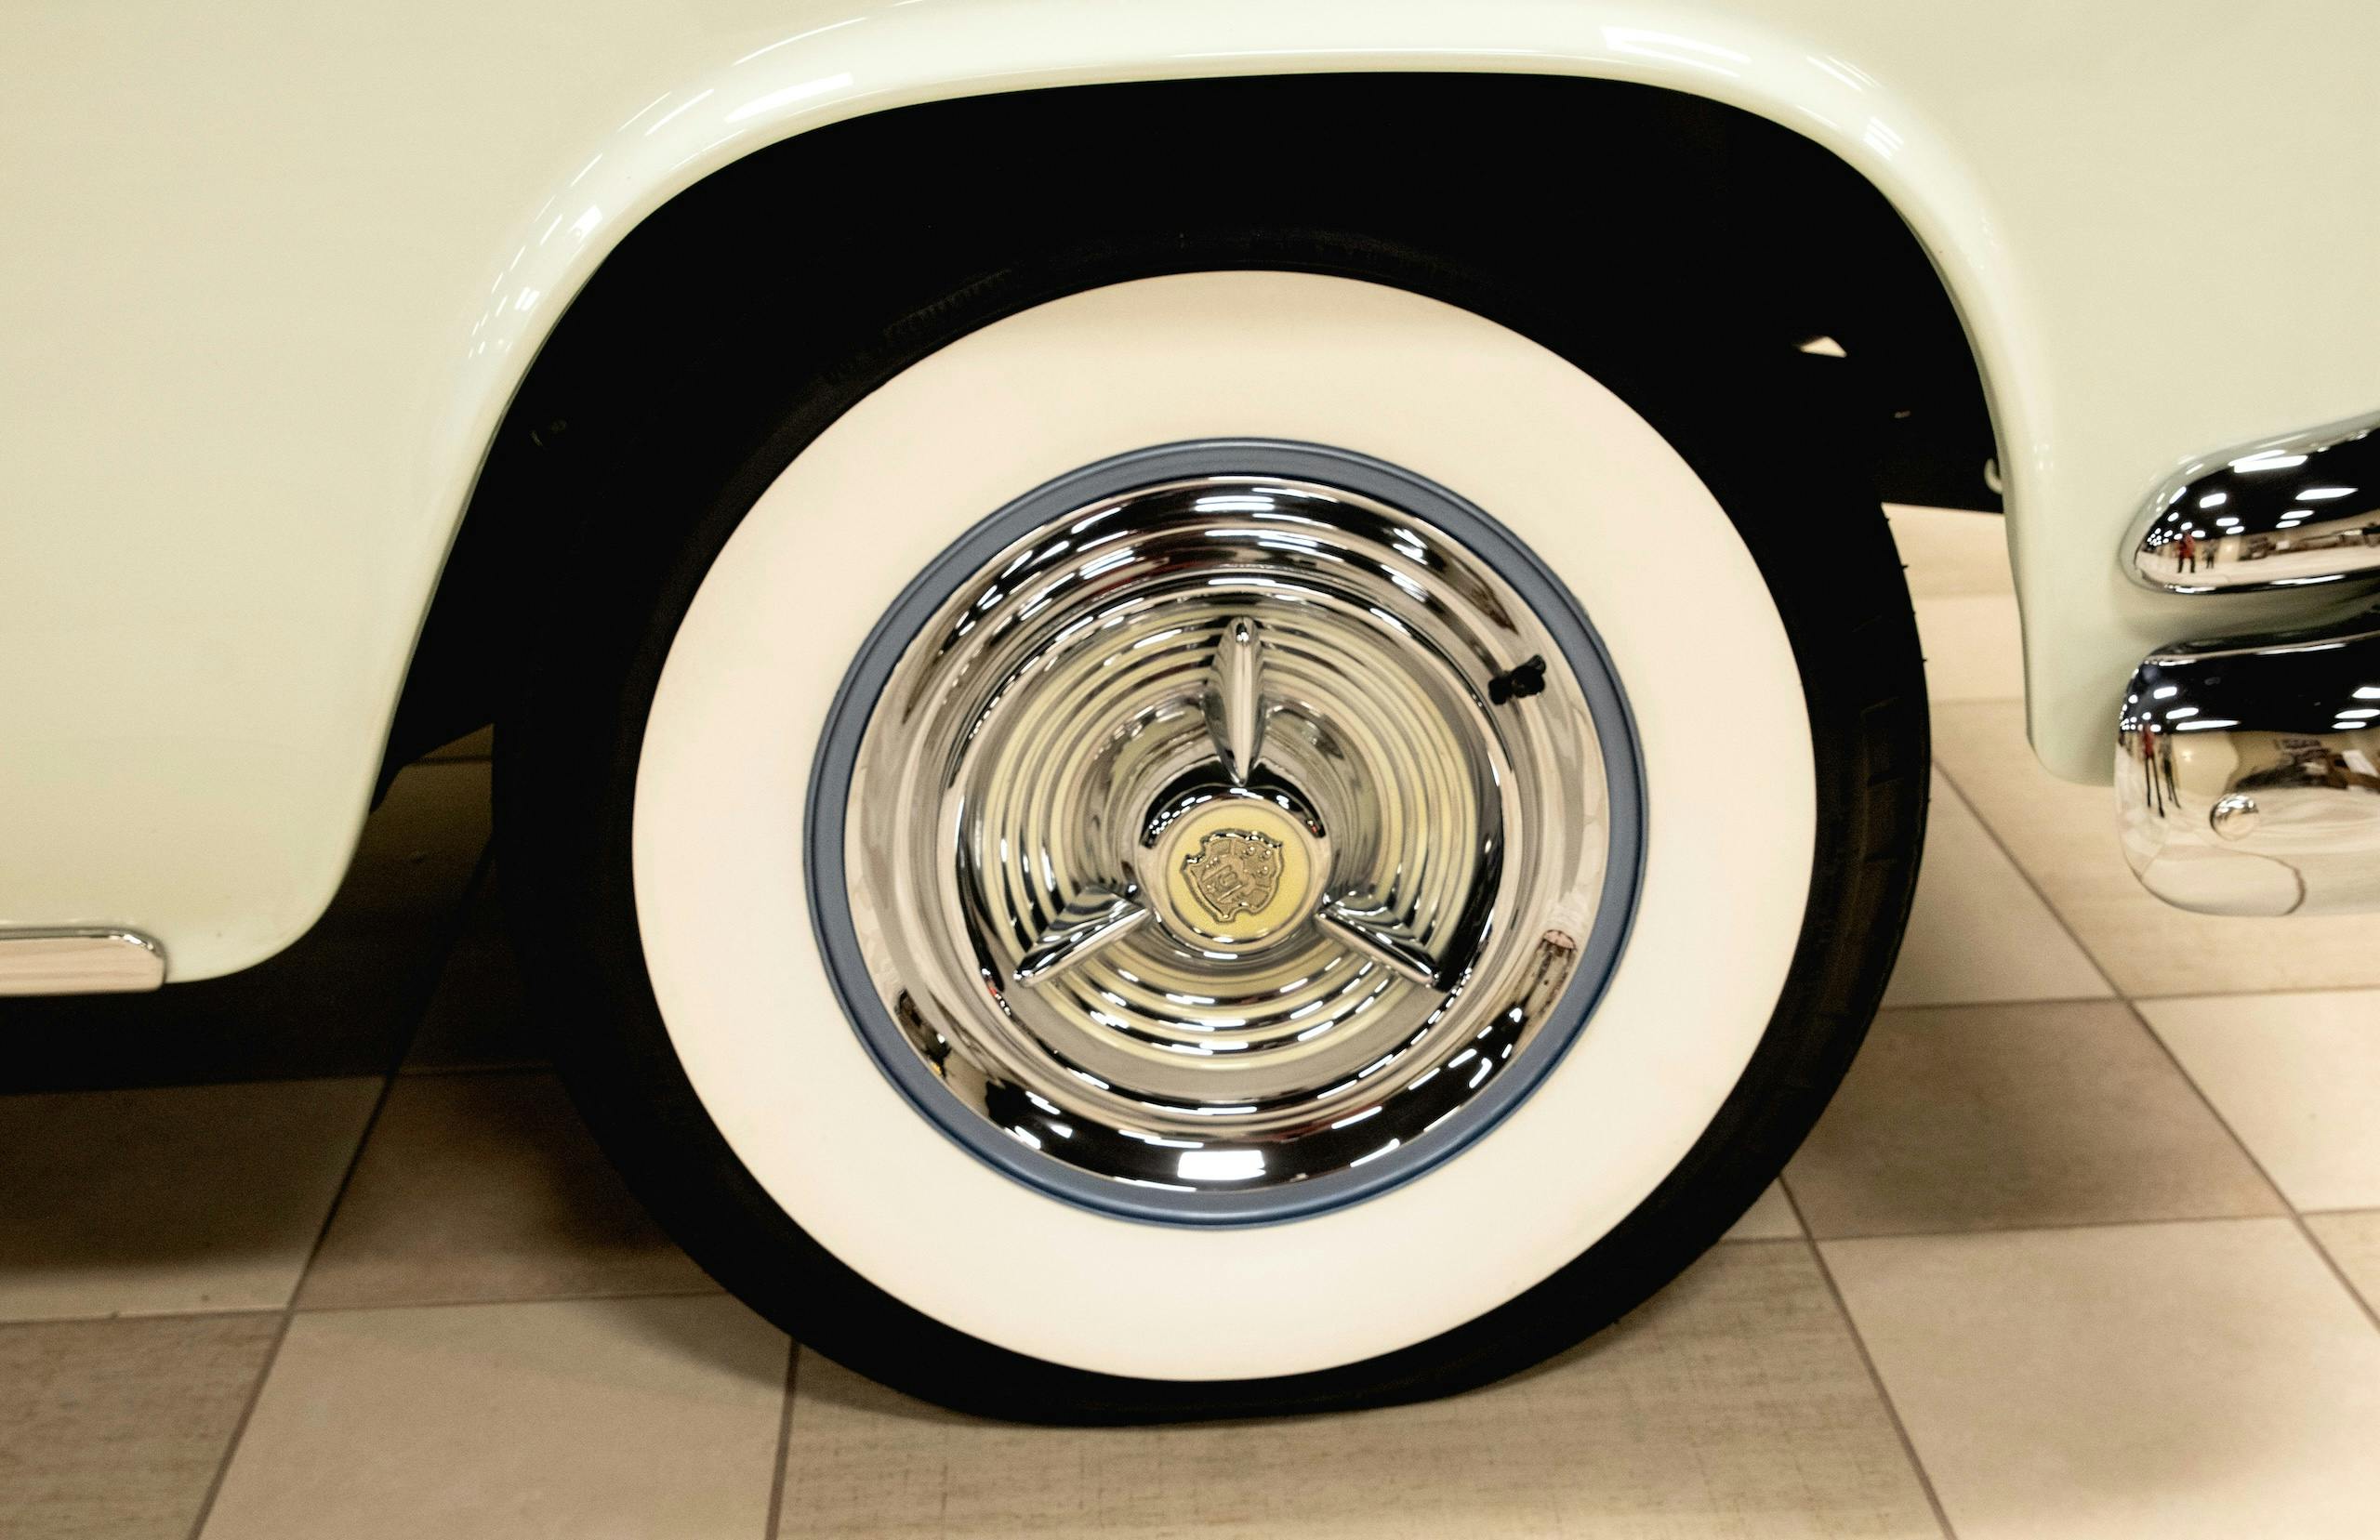 Oldmobile Fiesta Convertible wheels